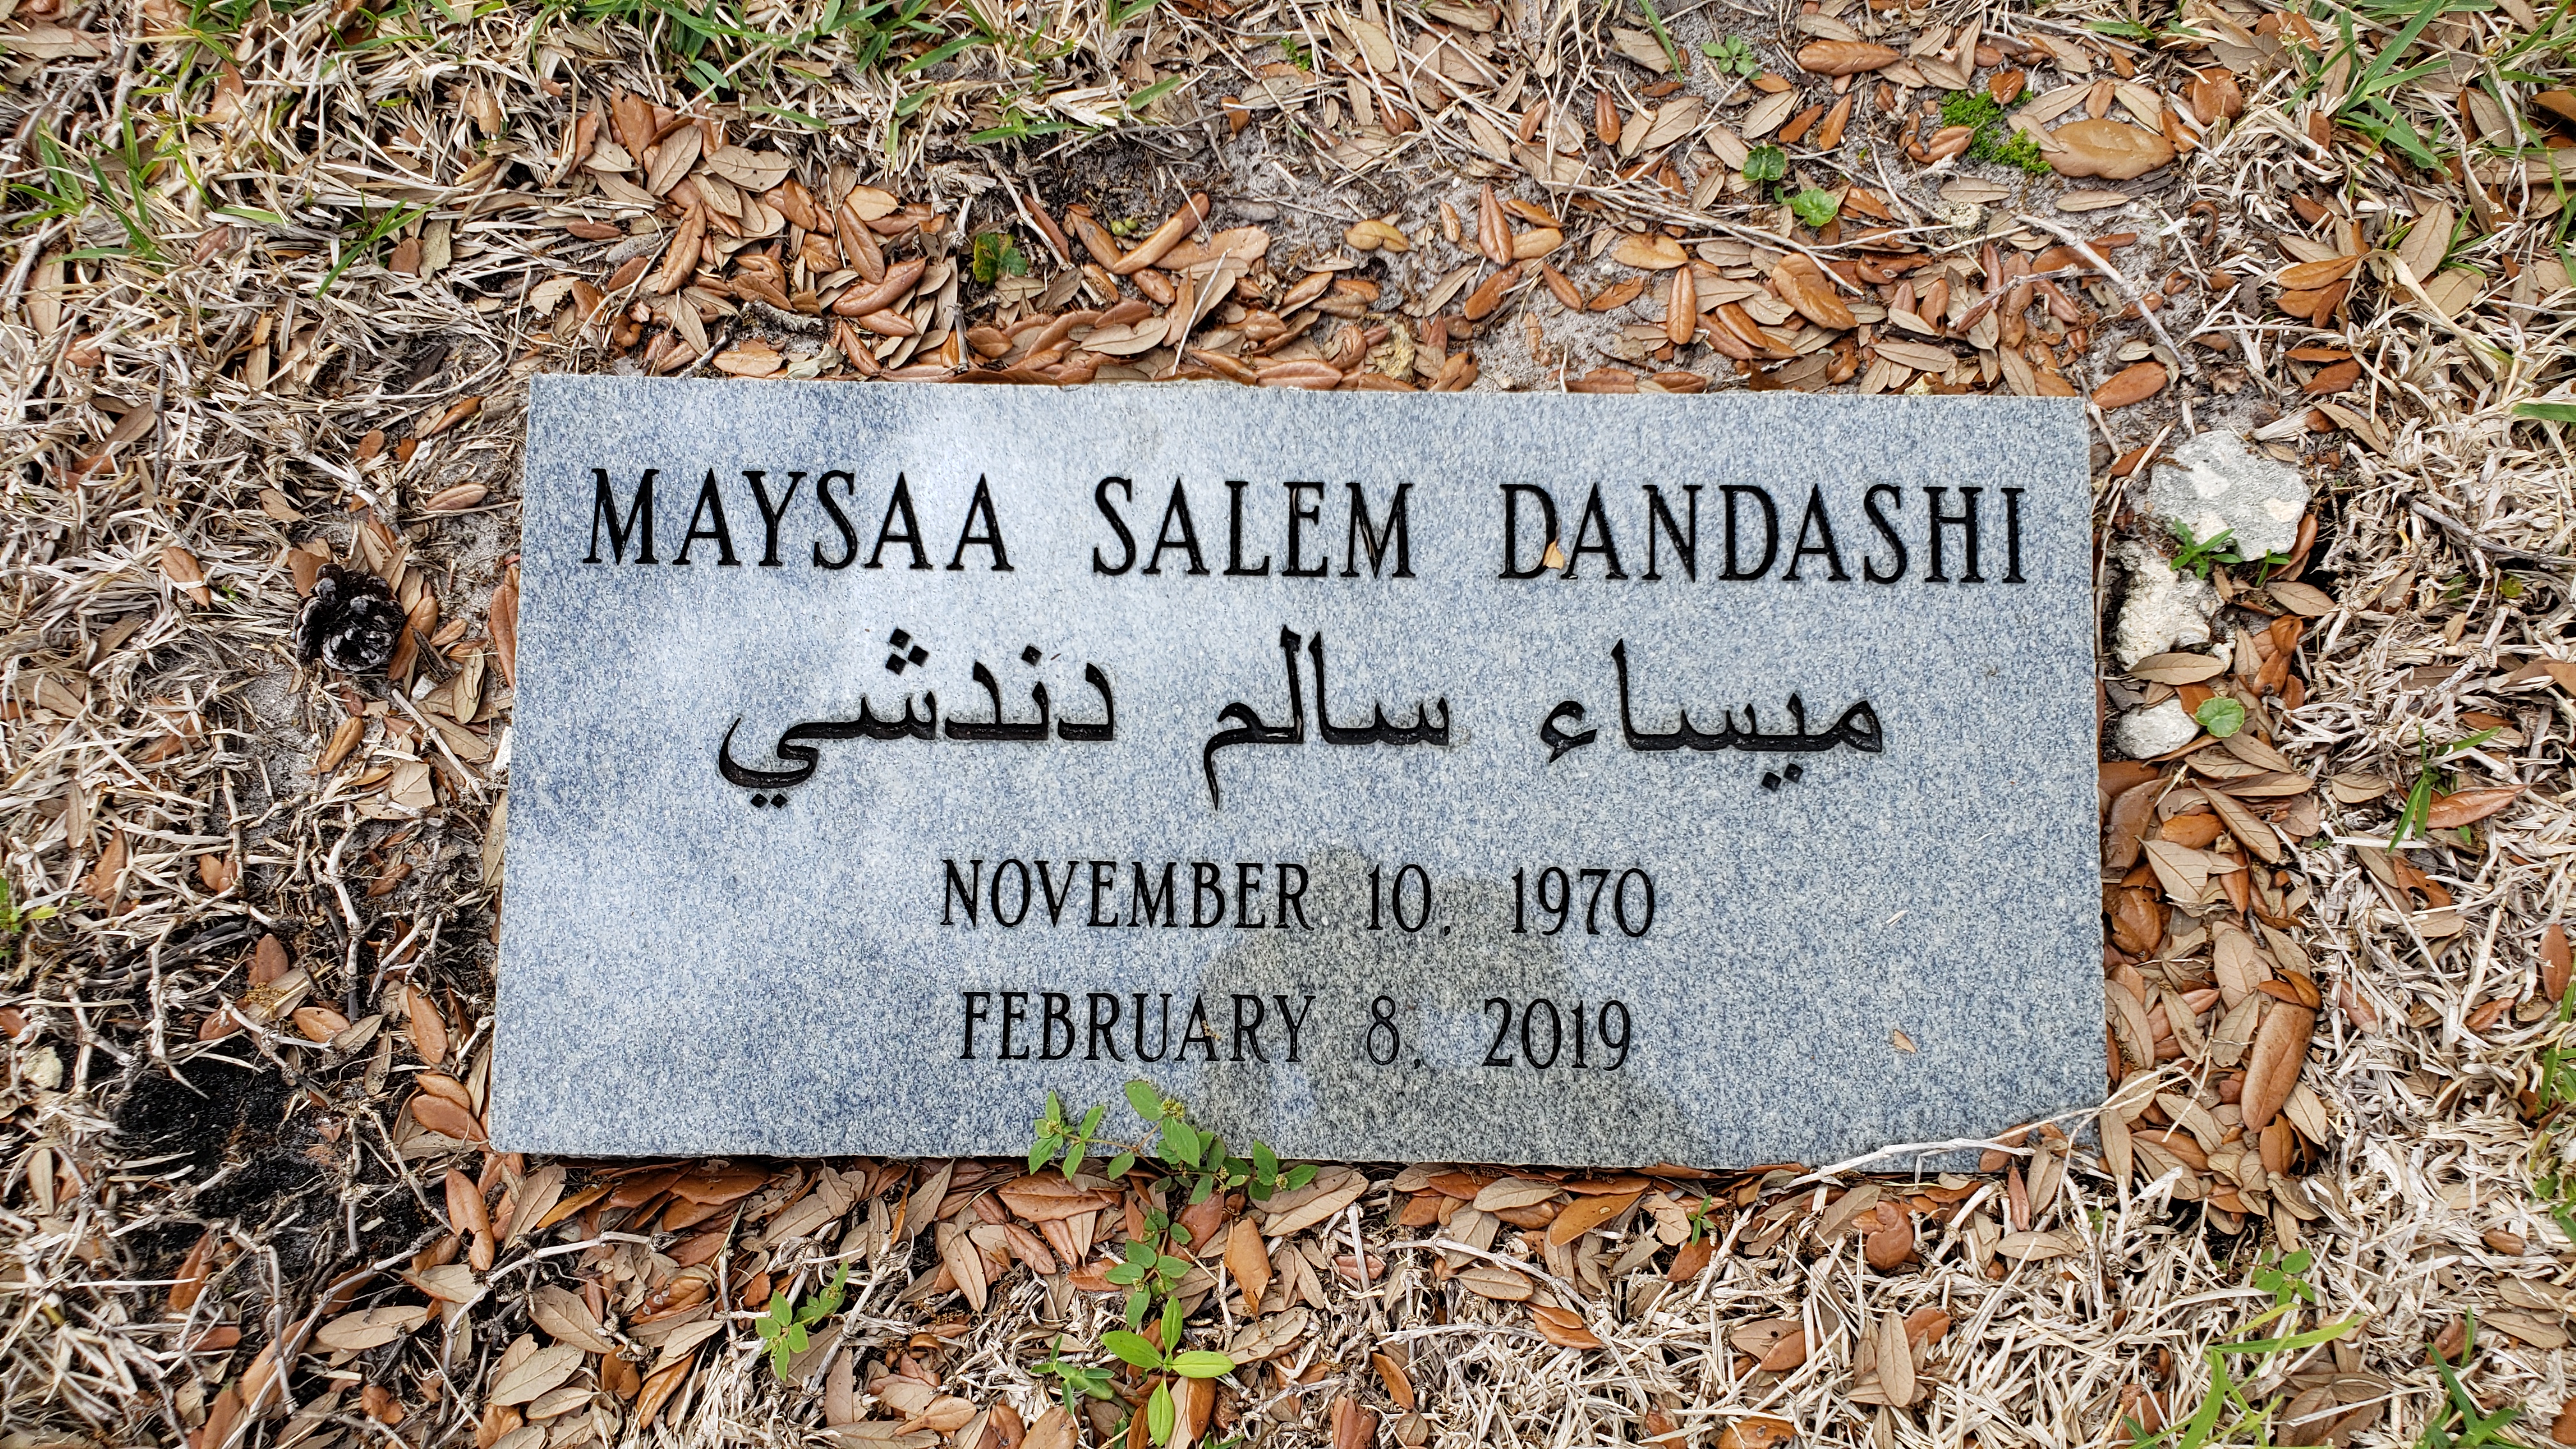 Maysaa Salem Dandashi